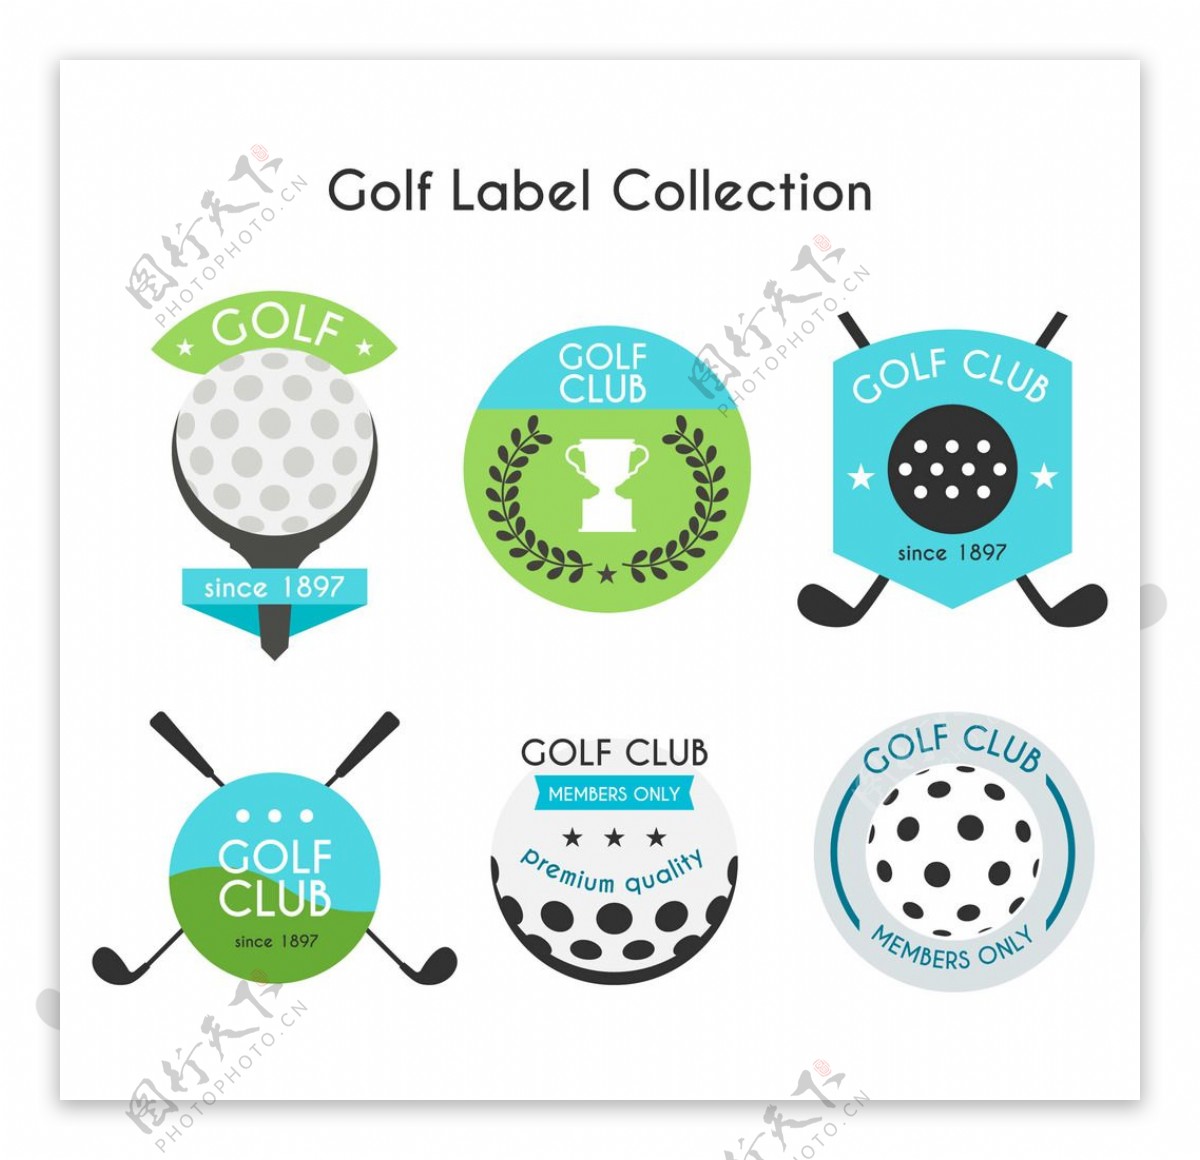 高尔夫标签